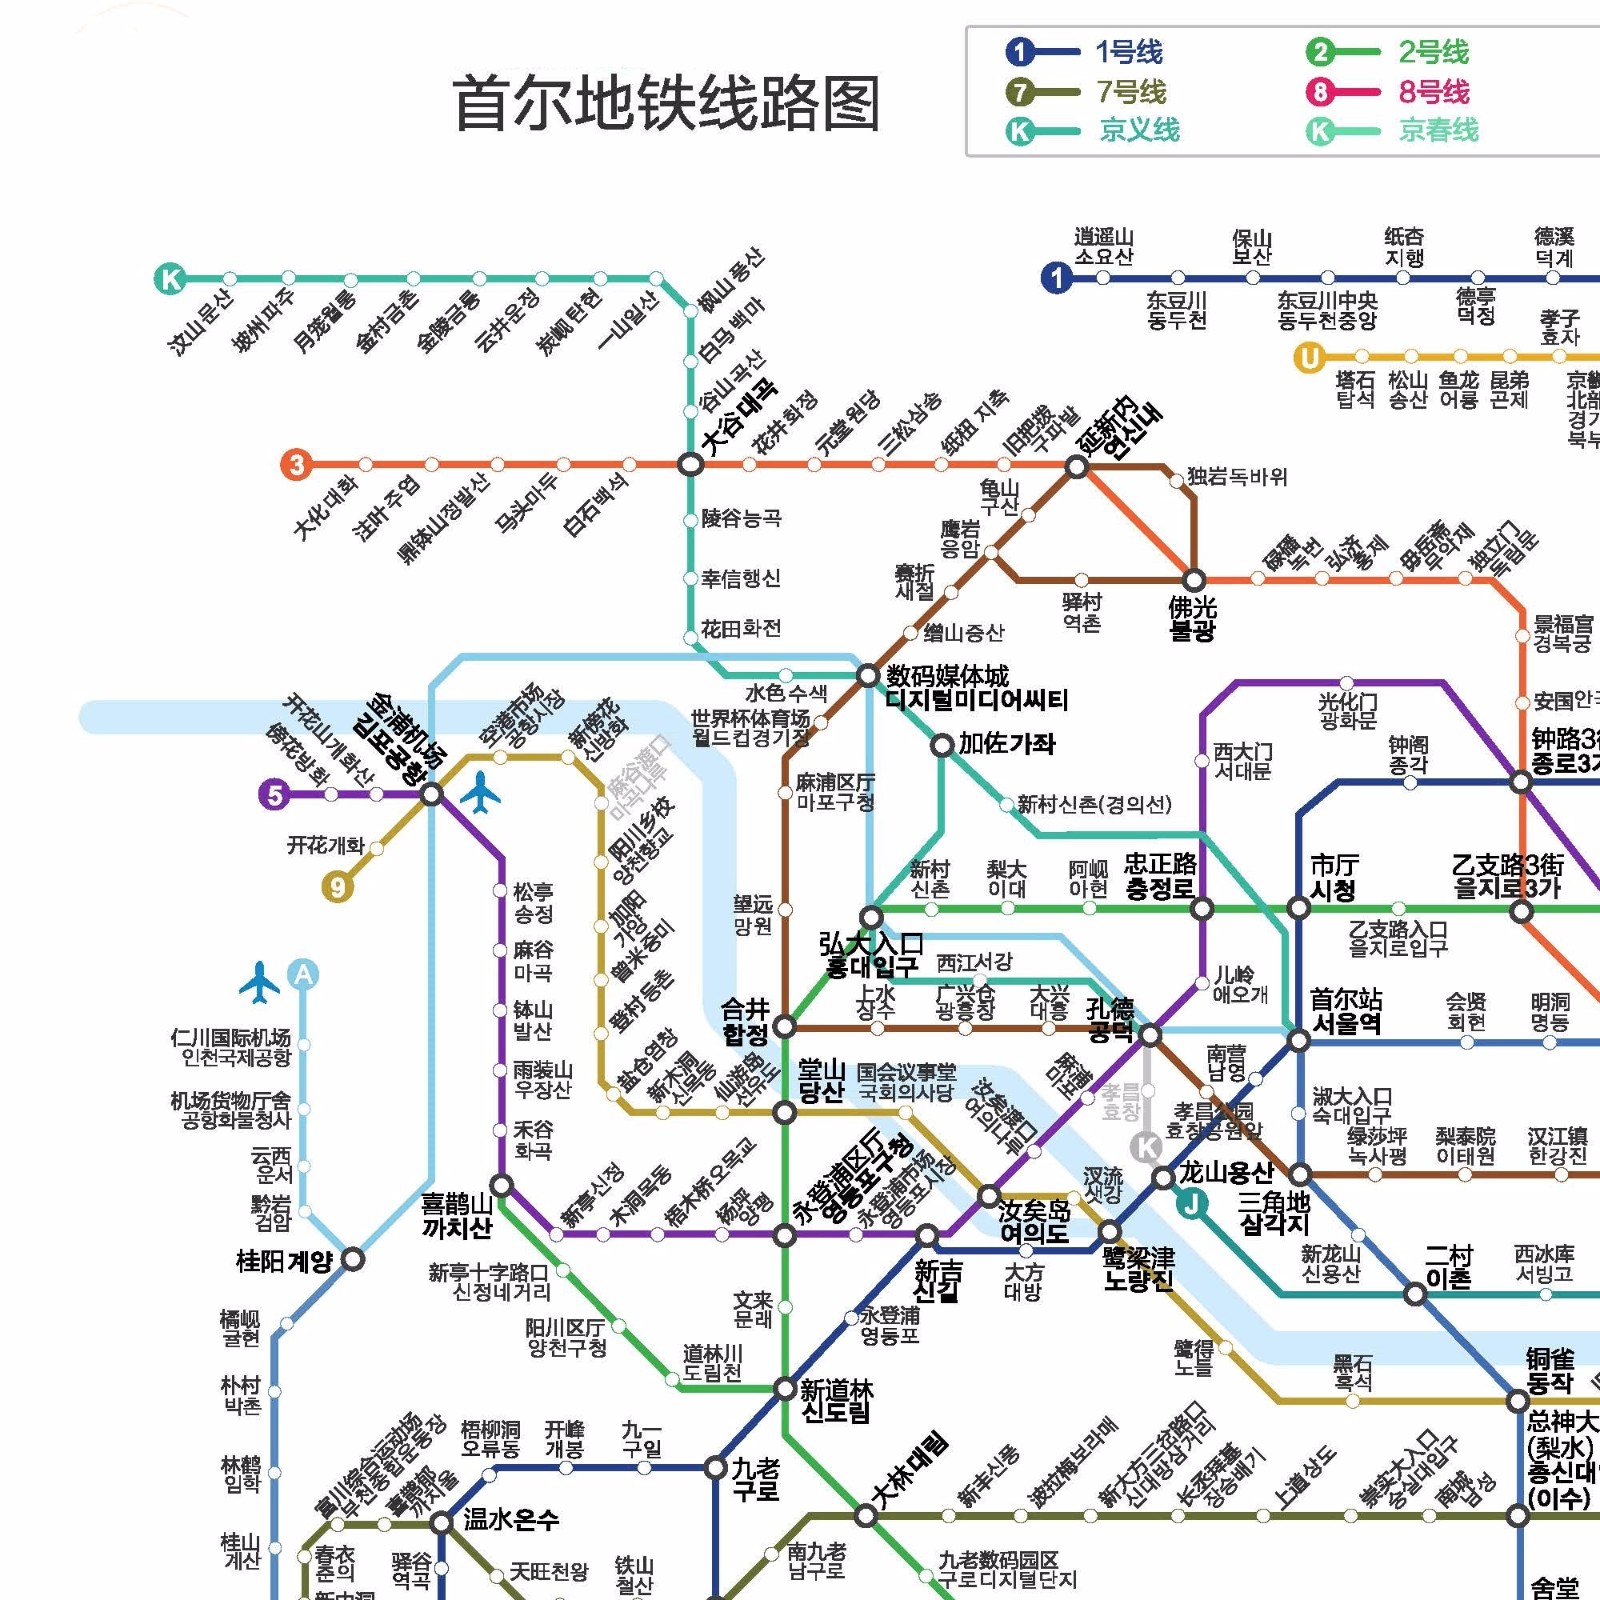 求韩国 首尔地铁线路图 中韩对照 最好是高清的 谢谢谢（首尔地铁线路图软件）